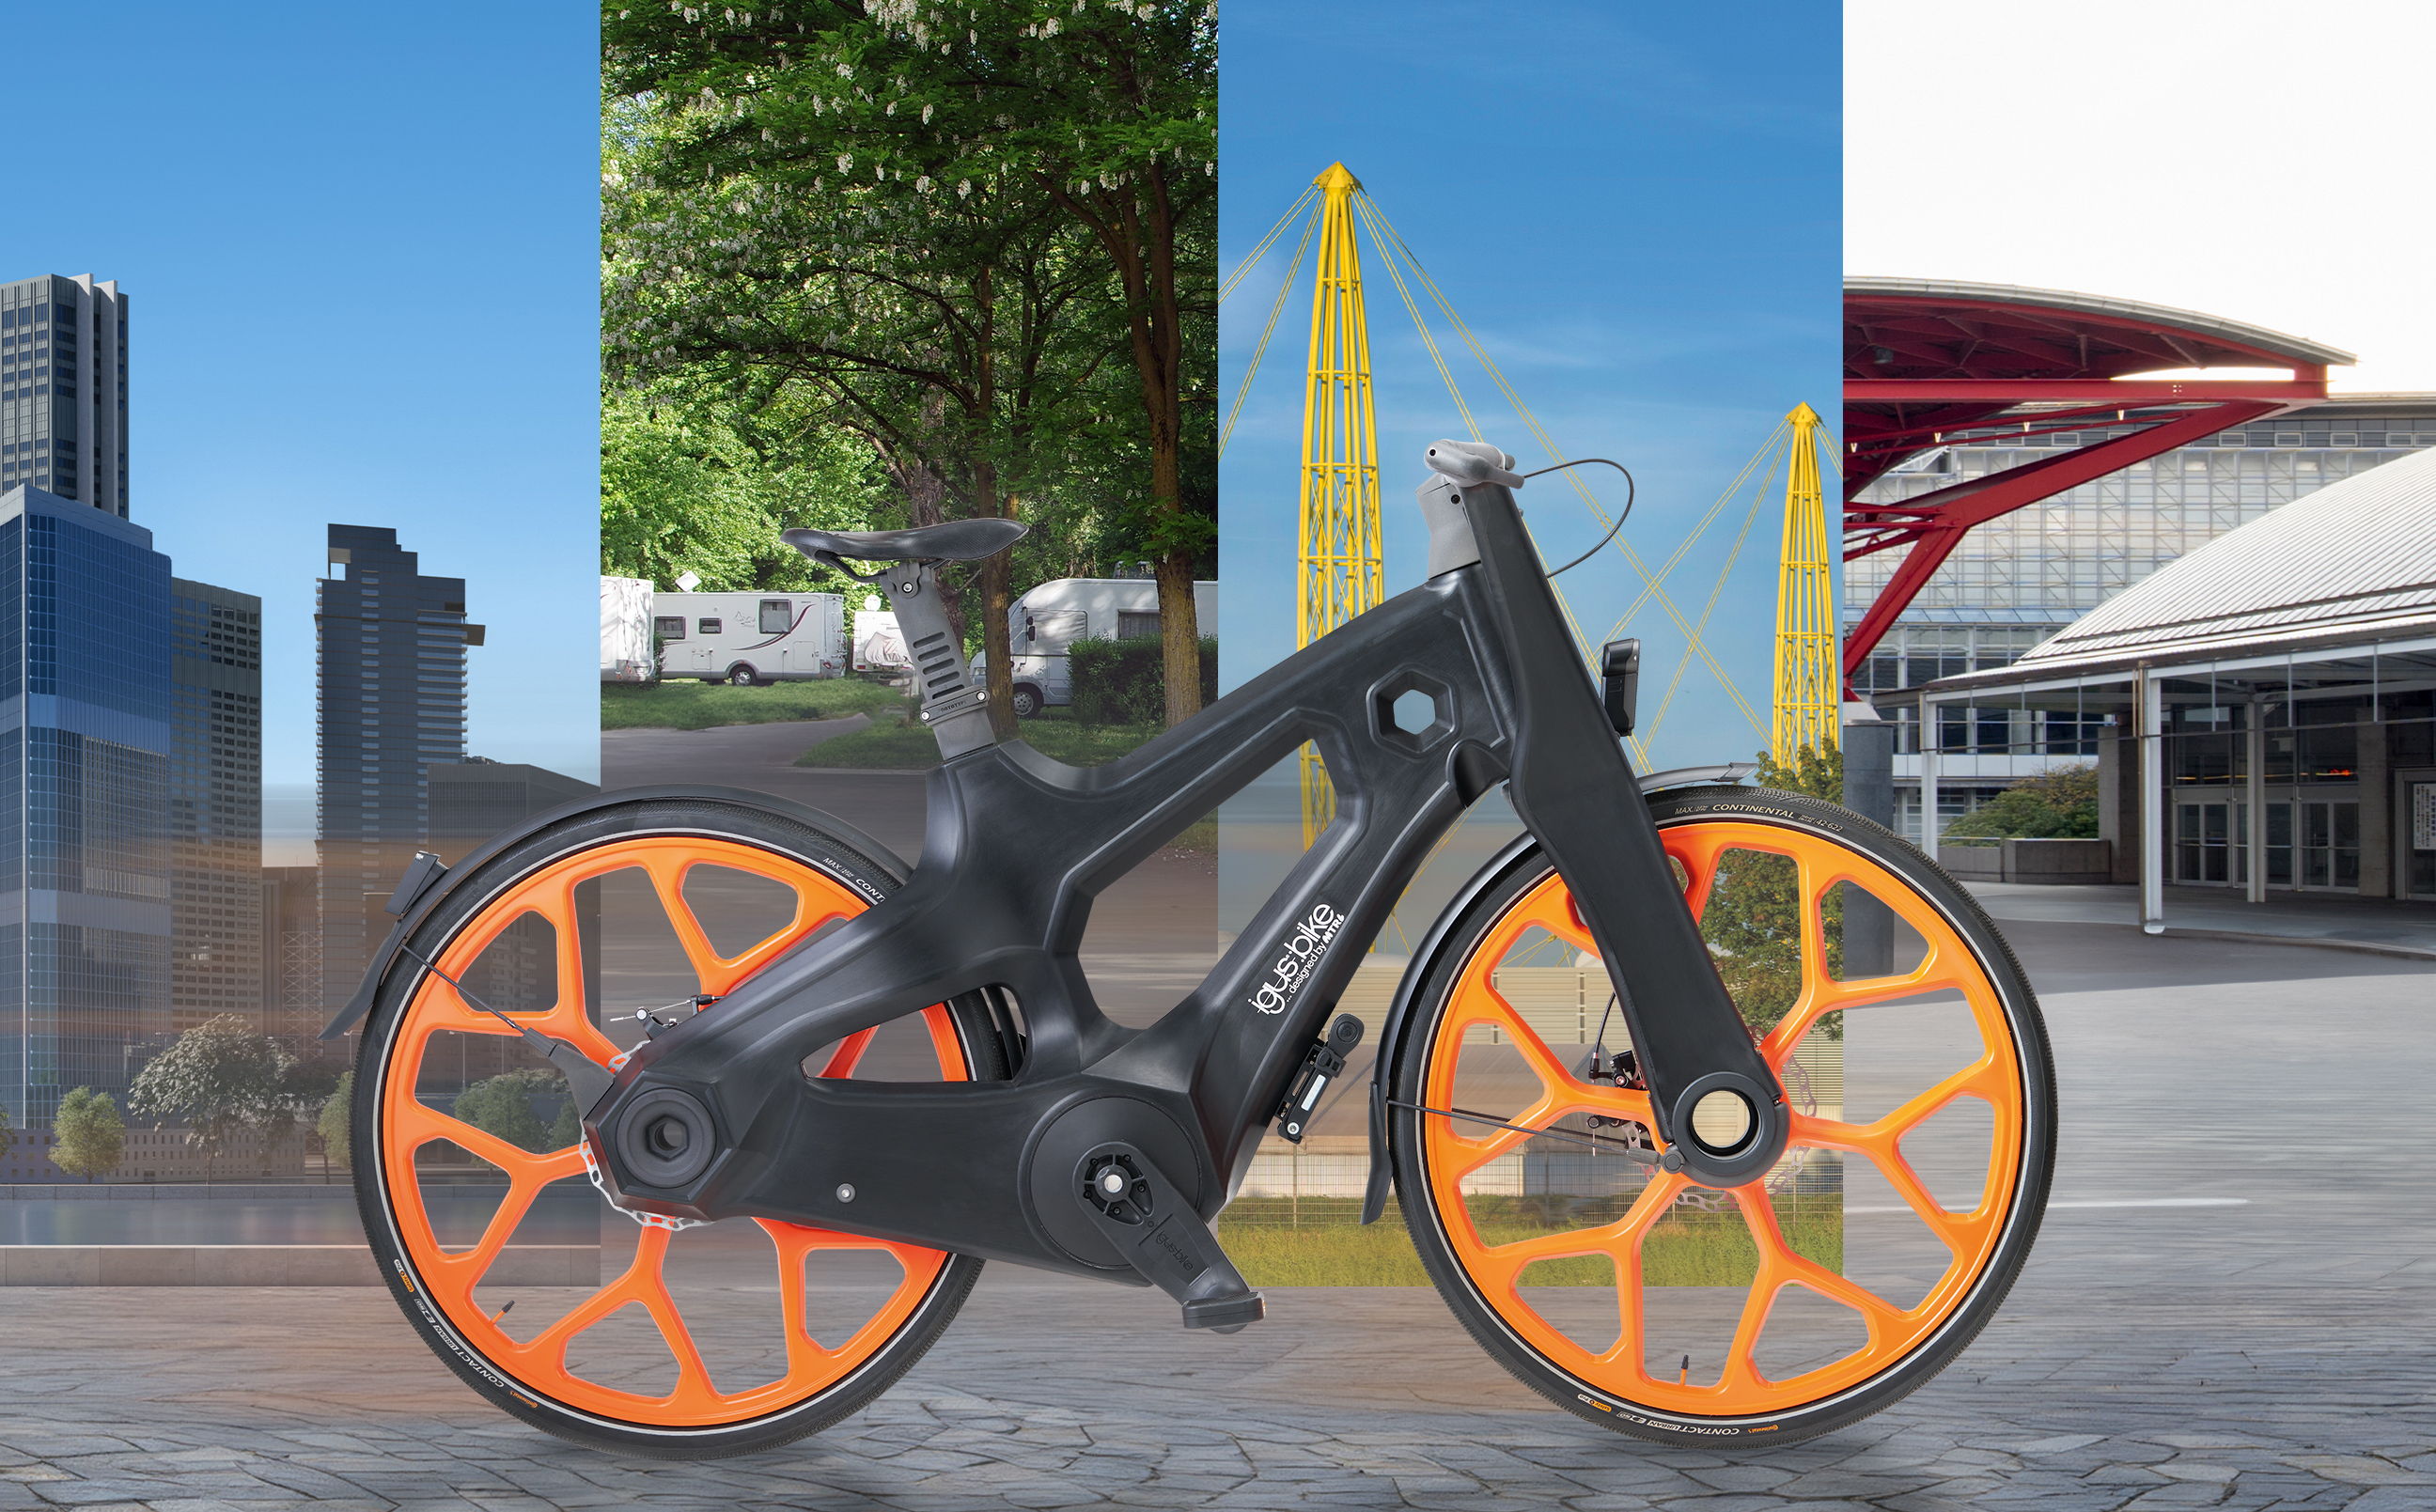 De eerste nieuwe igus fietsen gaan nu de weg op en zullen niet alleen in steden te zien zijn, maar ook als hotelfiets, op campings of op vakbeurzen. (Bron: igus B.V.)